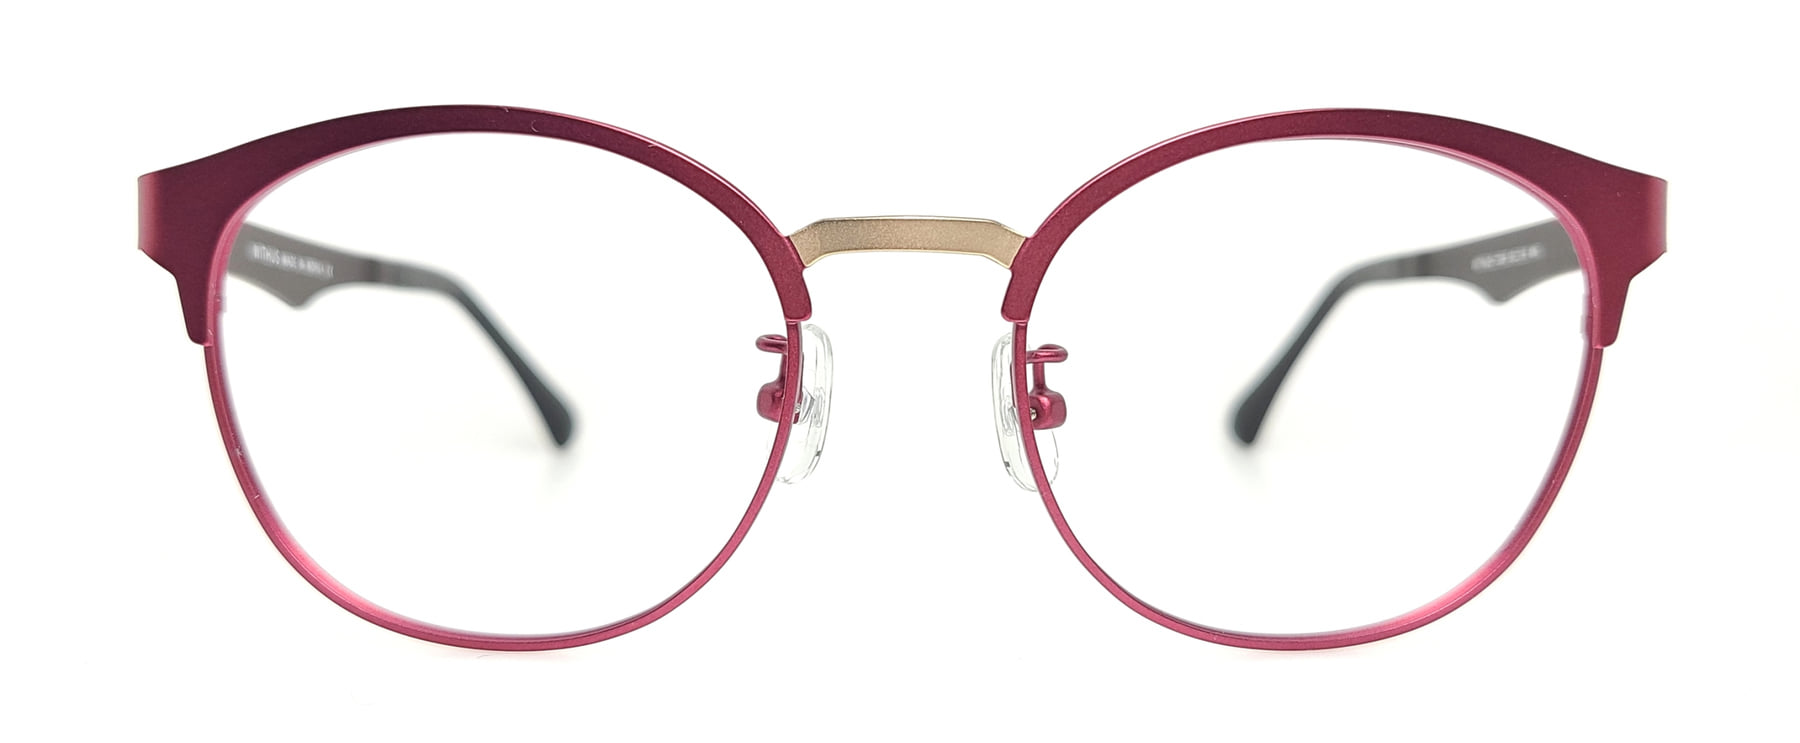 WITHUS-7309, Korean glasses, sunglasses, eyeglasses, glasses